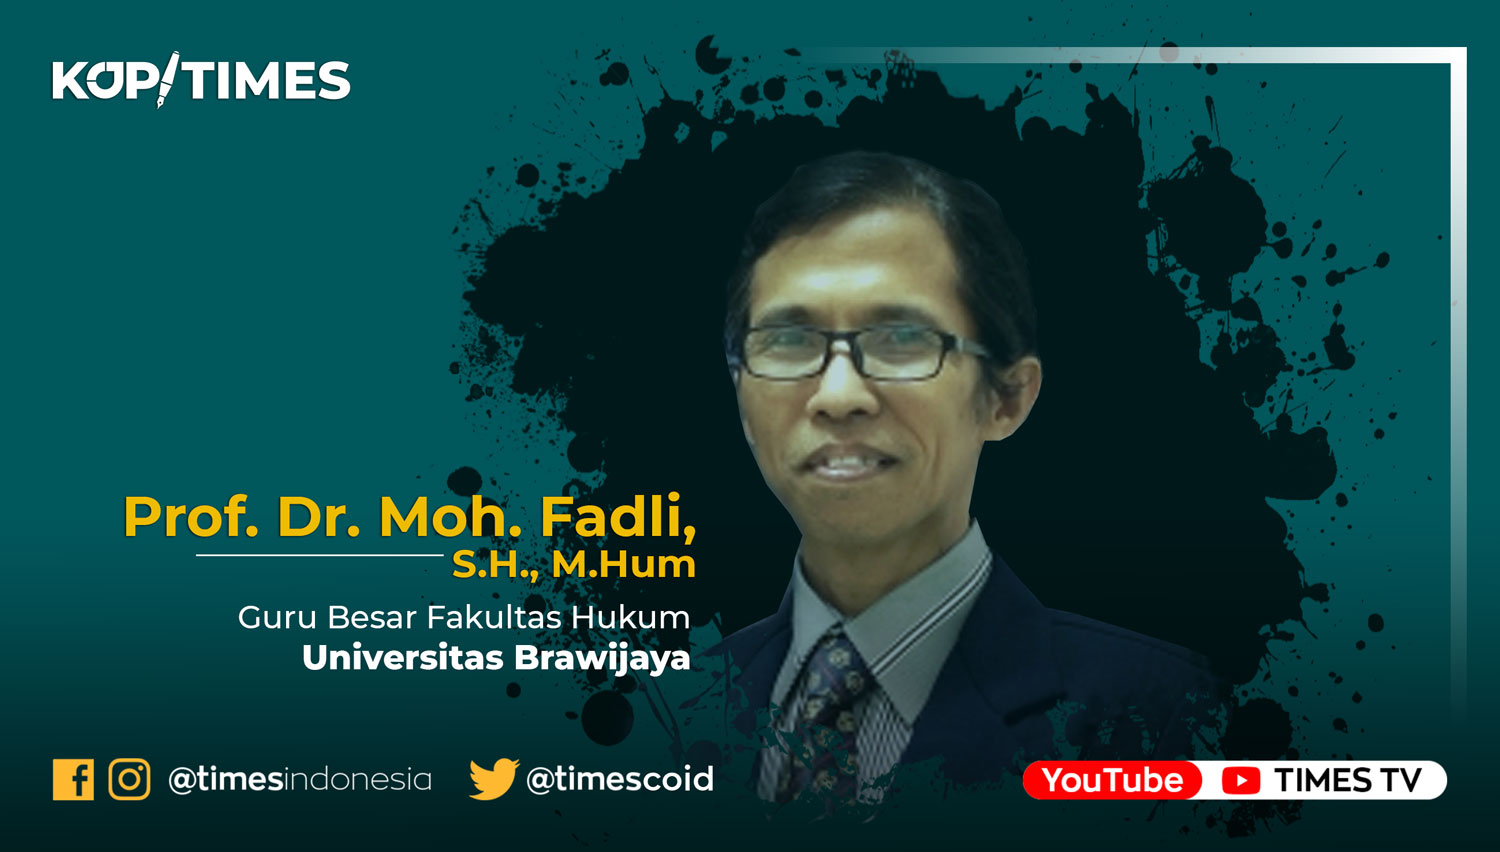 Prof. Dr. Moh. Fadli, S.H., M.Hum, Guru Besar Fakultas Hukum Universitas Brawijaya.